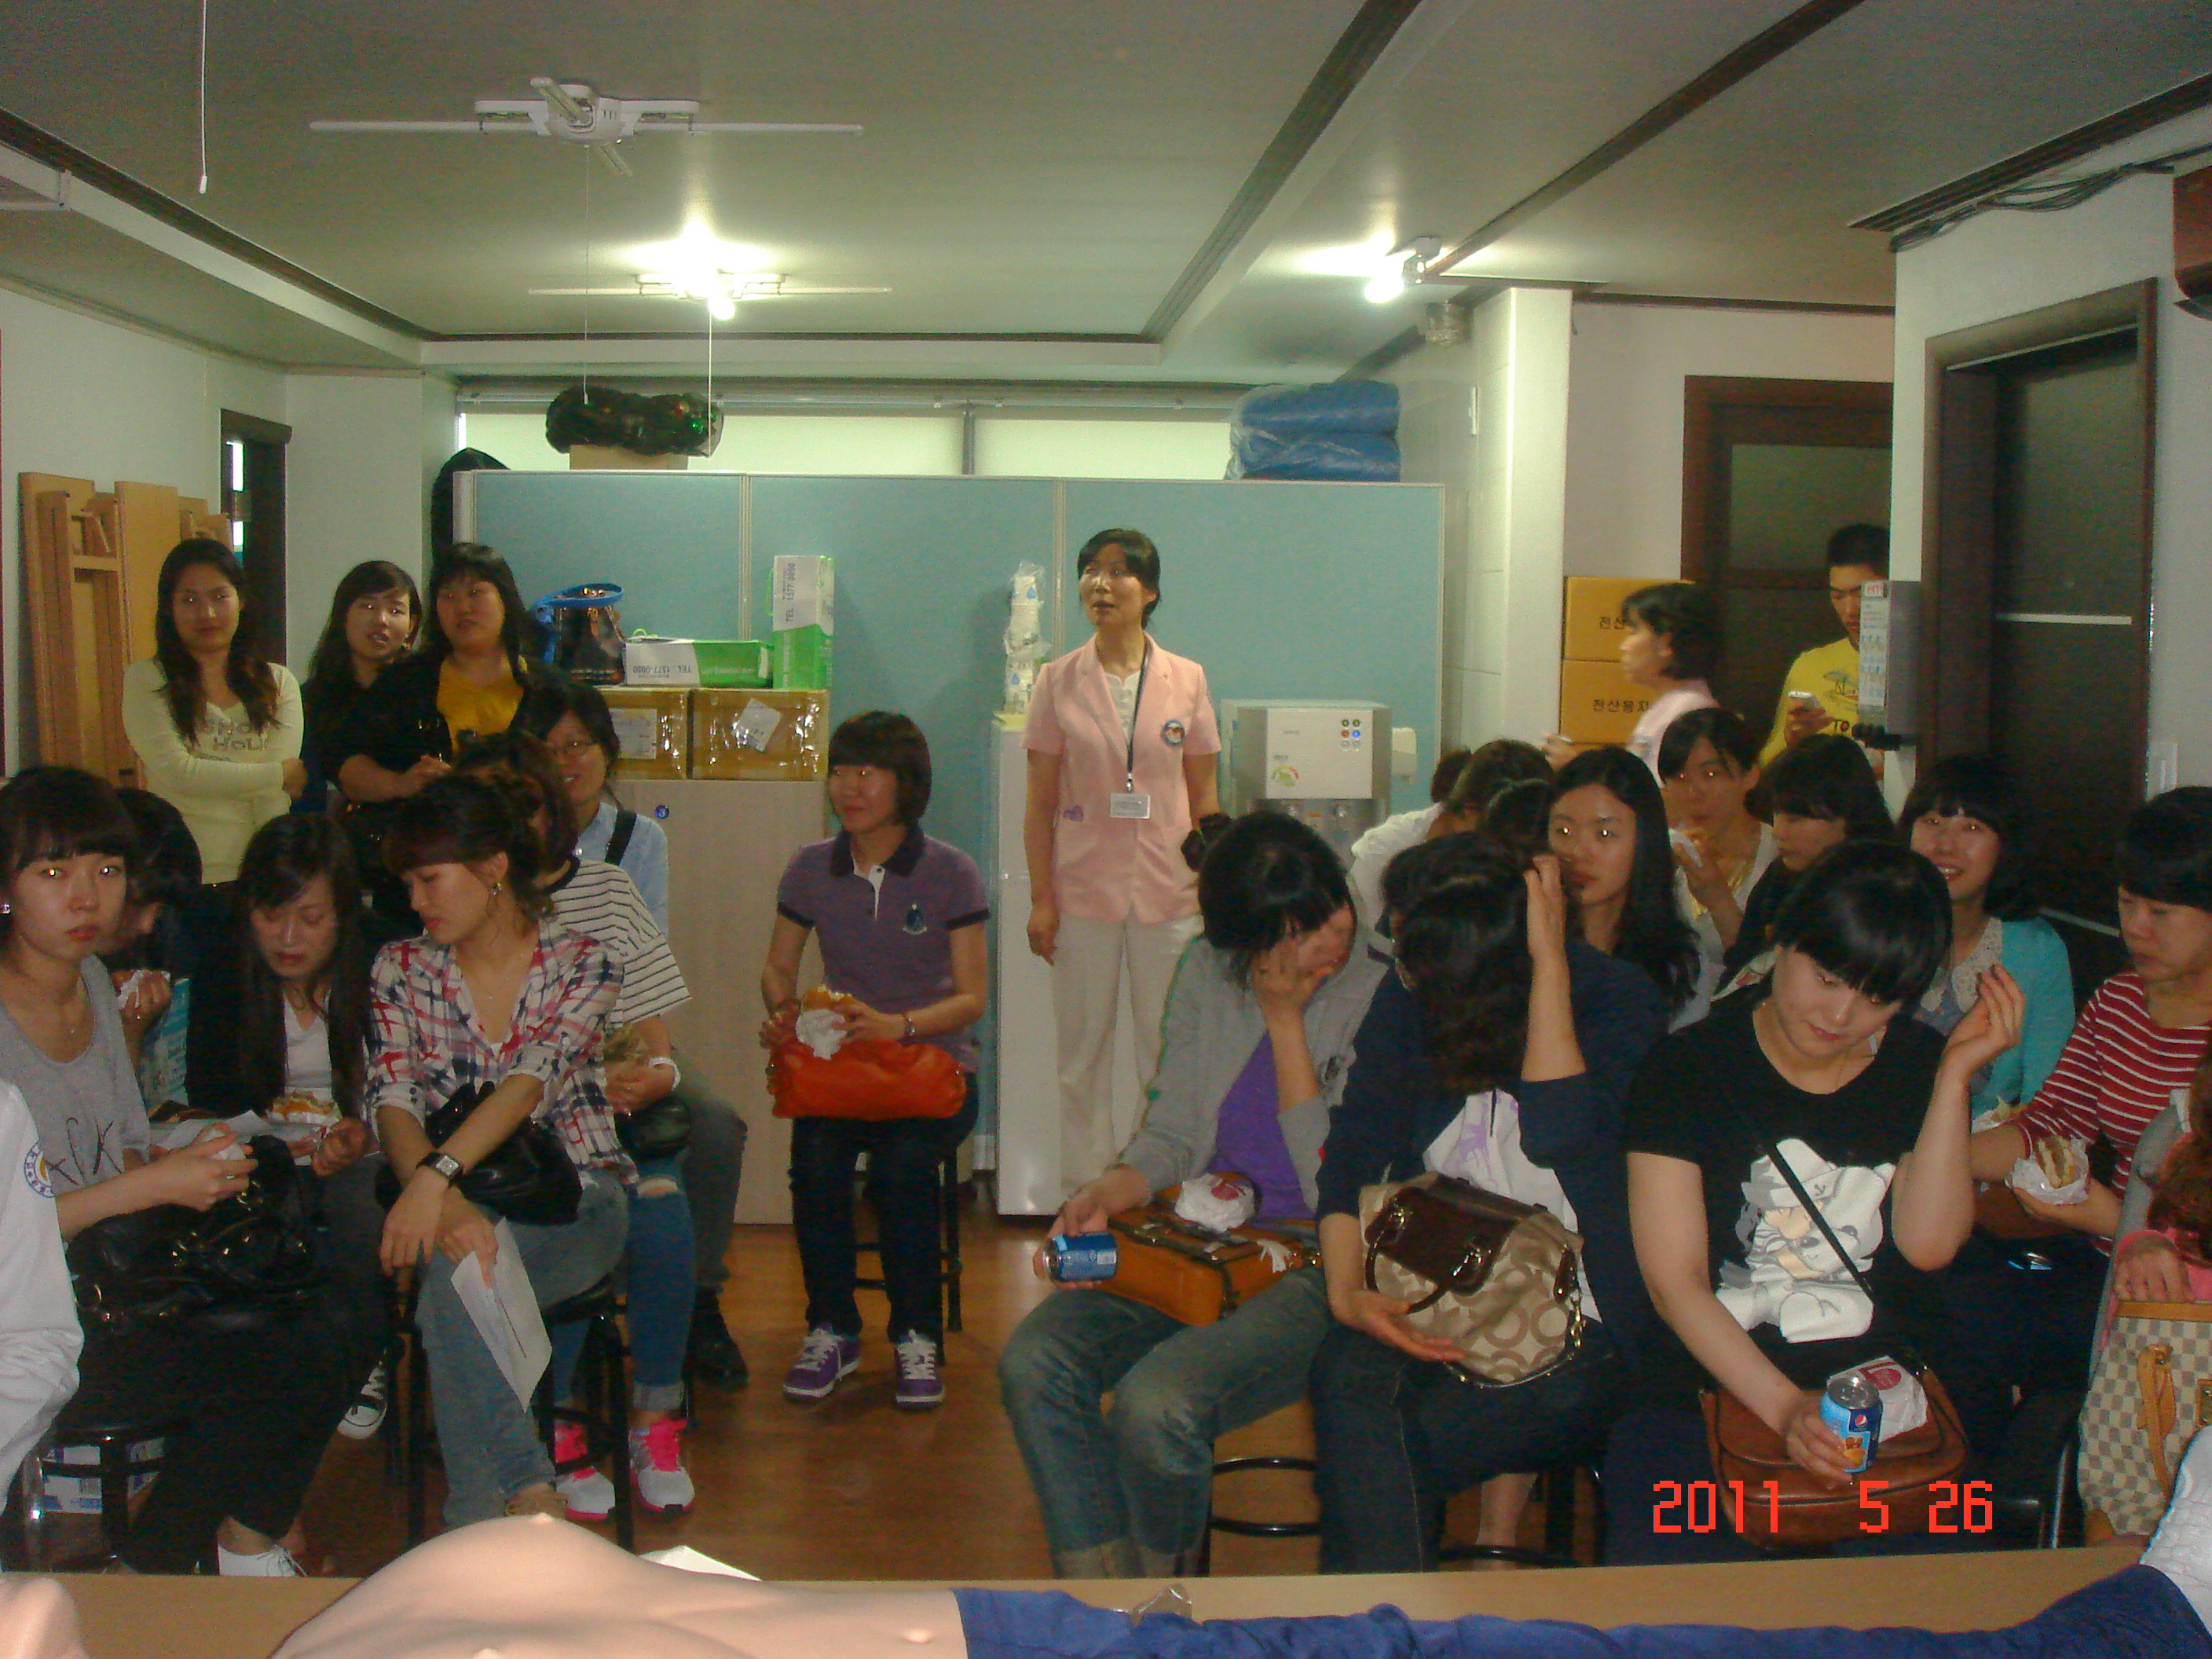 [강북점] 2011년 5월 26일 - 전직원 직무교육 실시 (심폐소생술, CPR) 게시글의 2번째 첨부파일입니다.